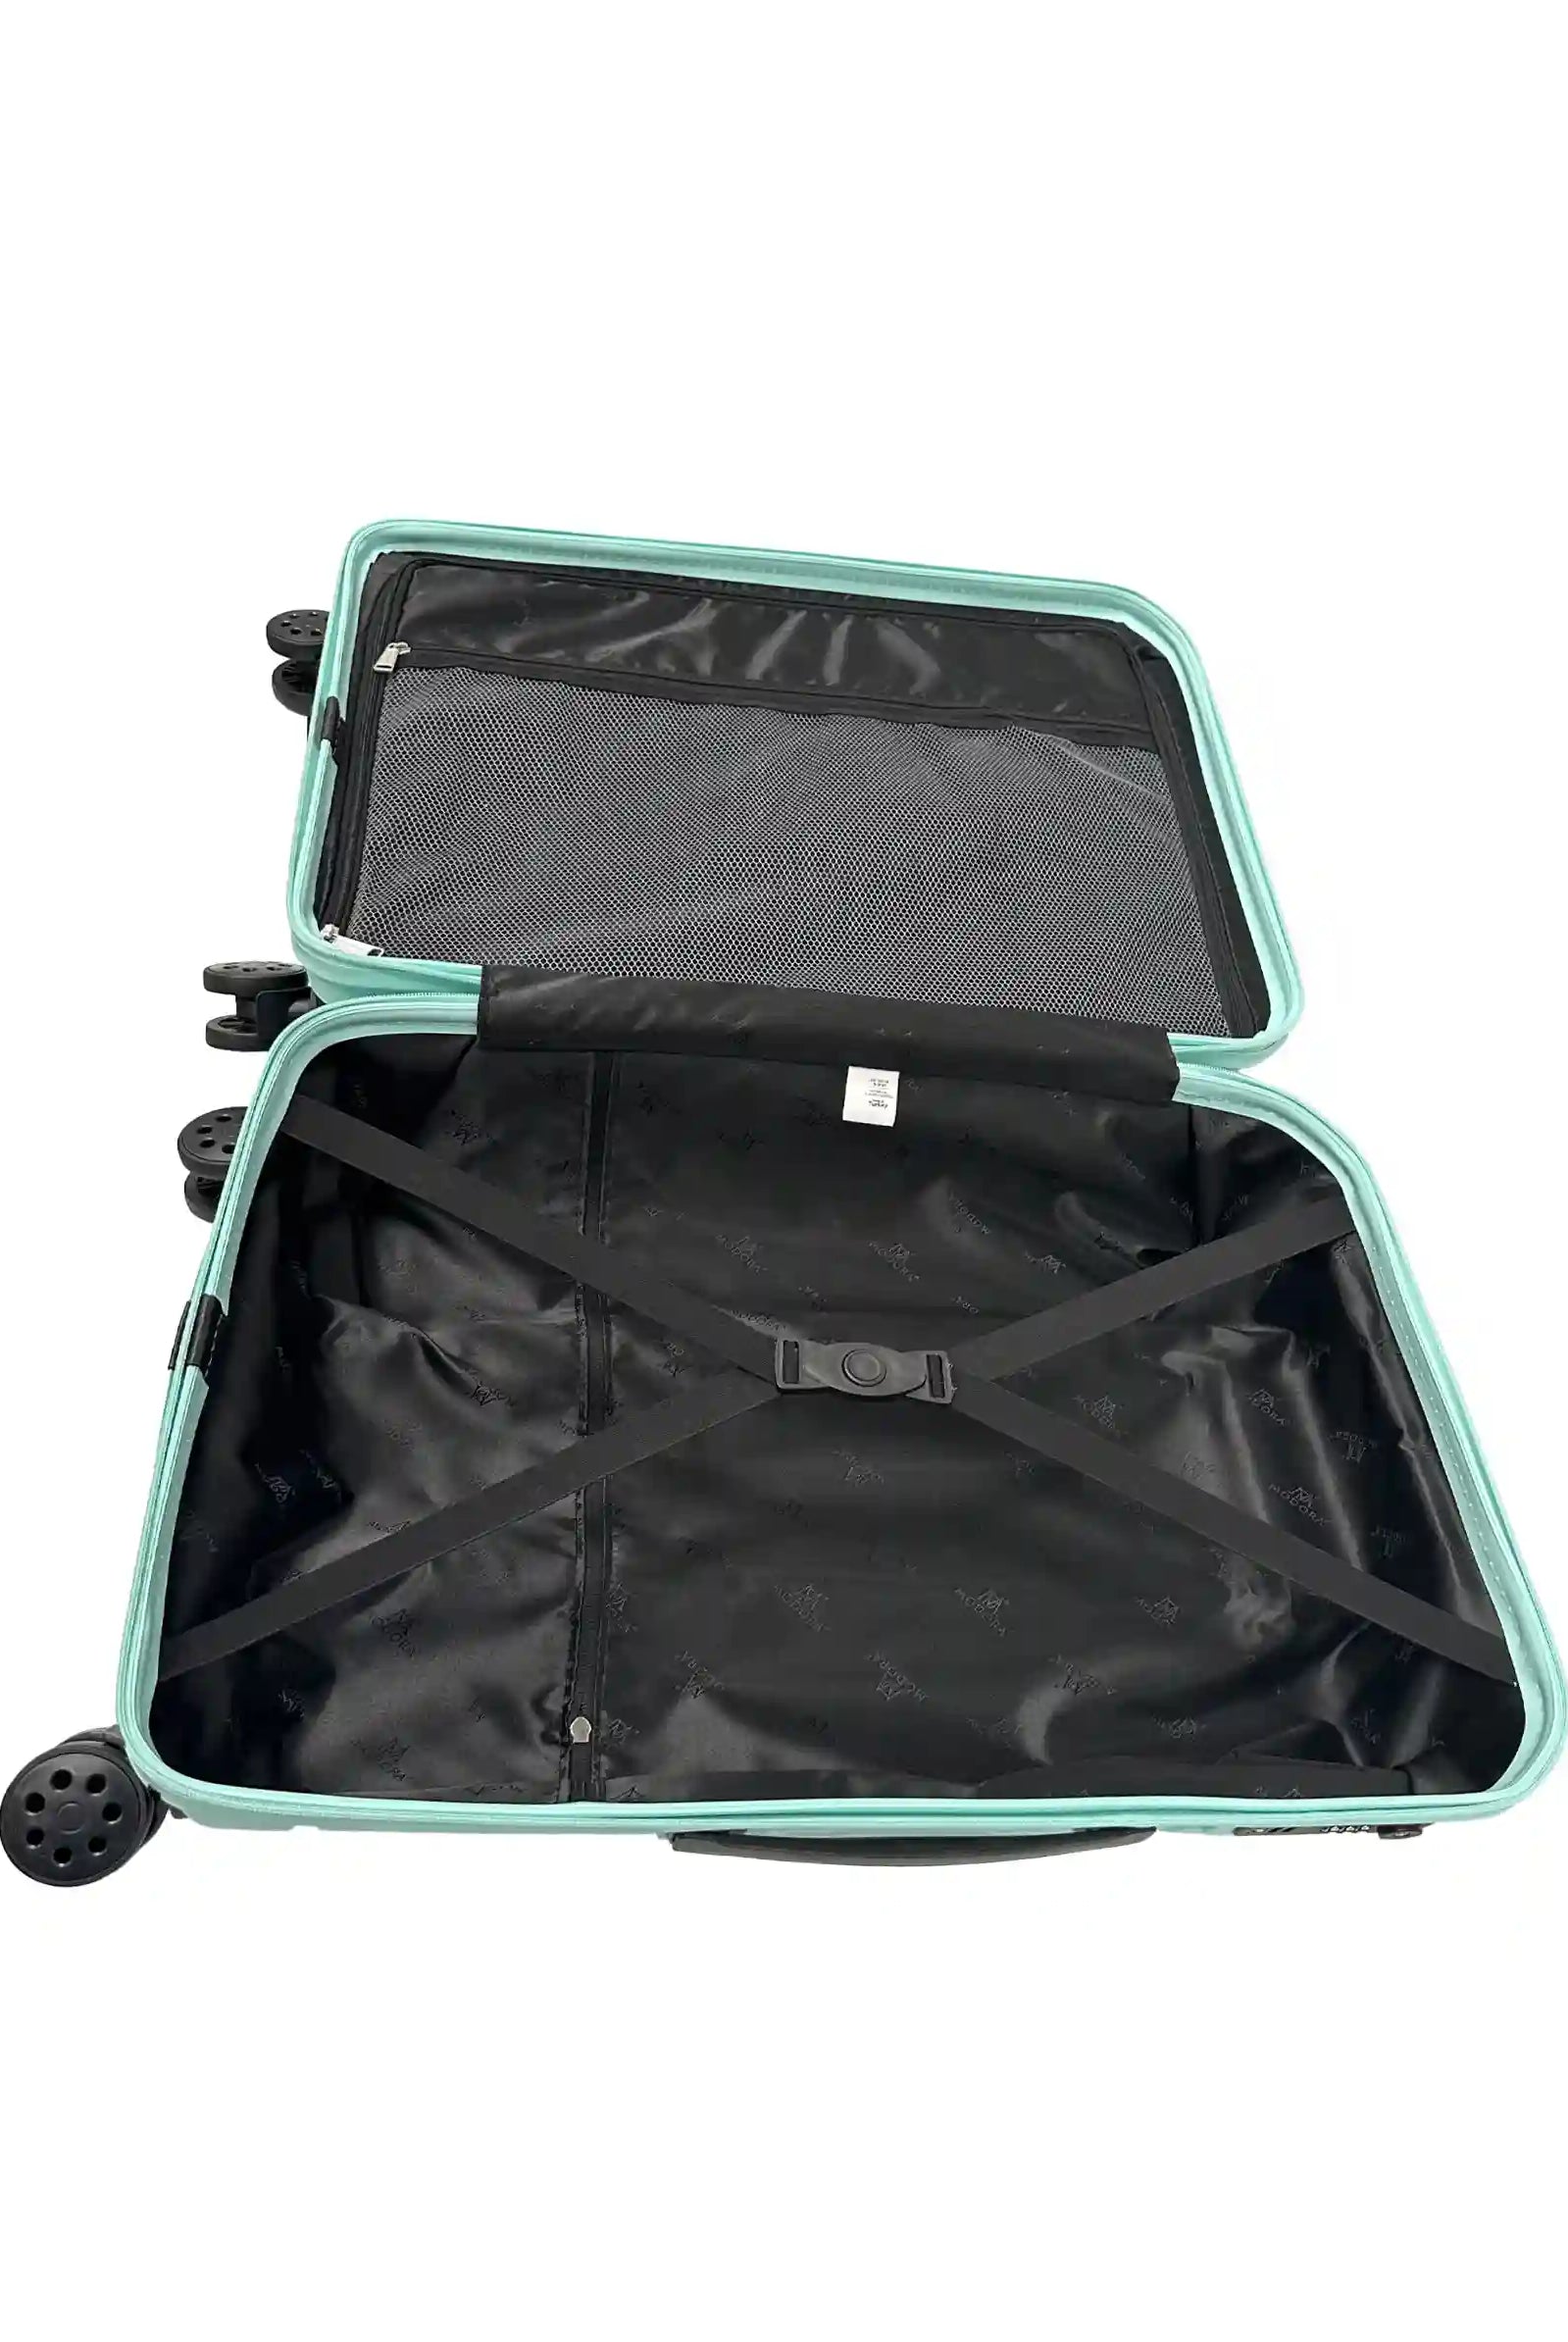 Medium green suitcase